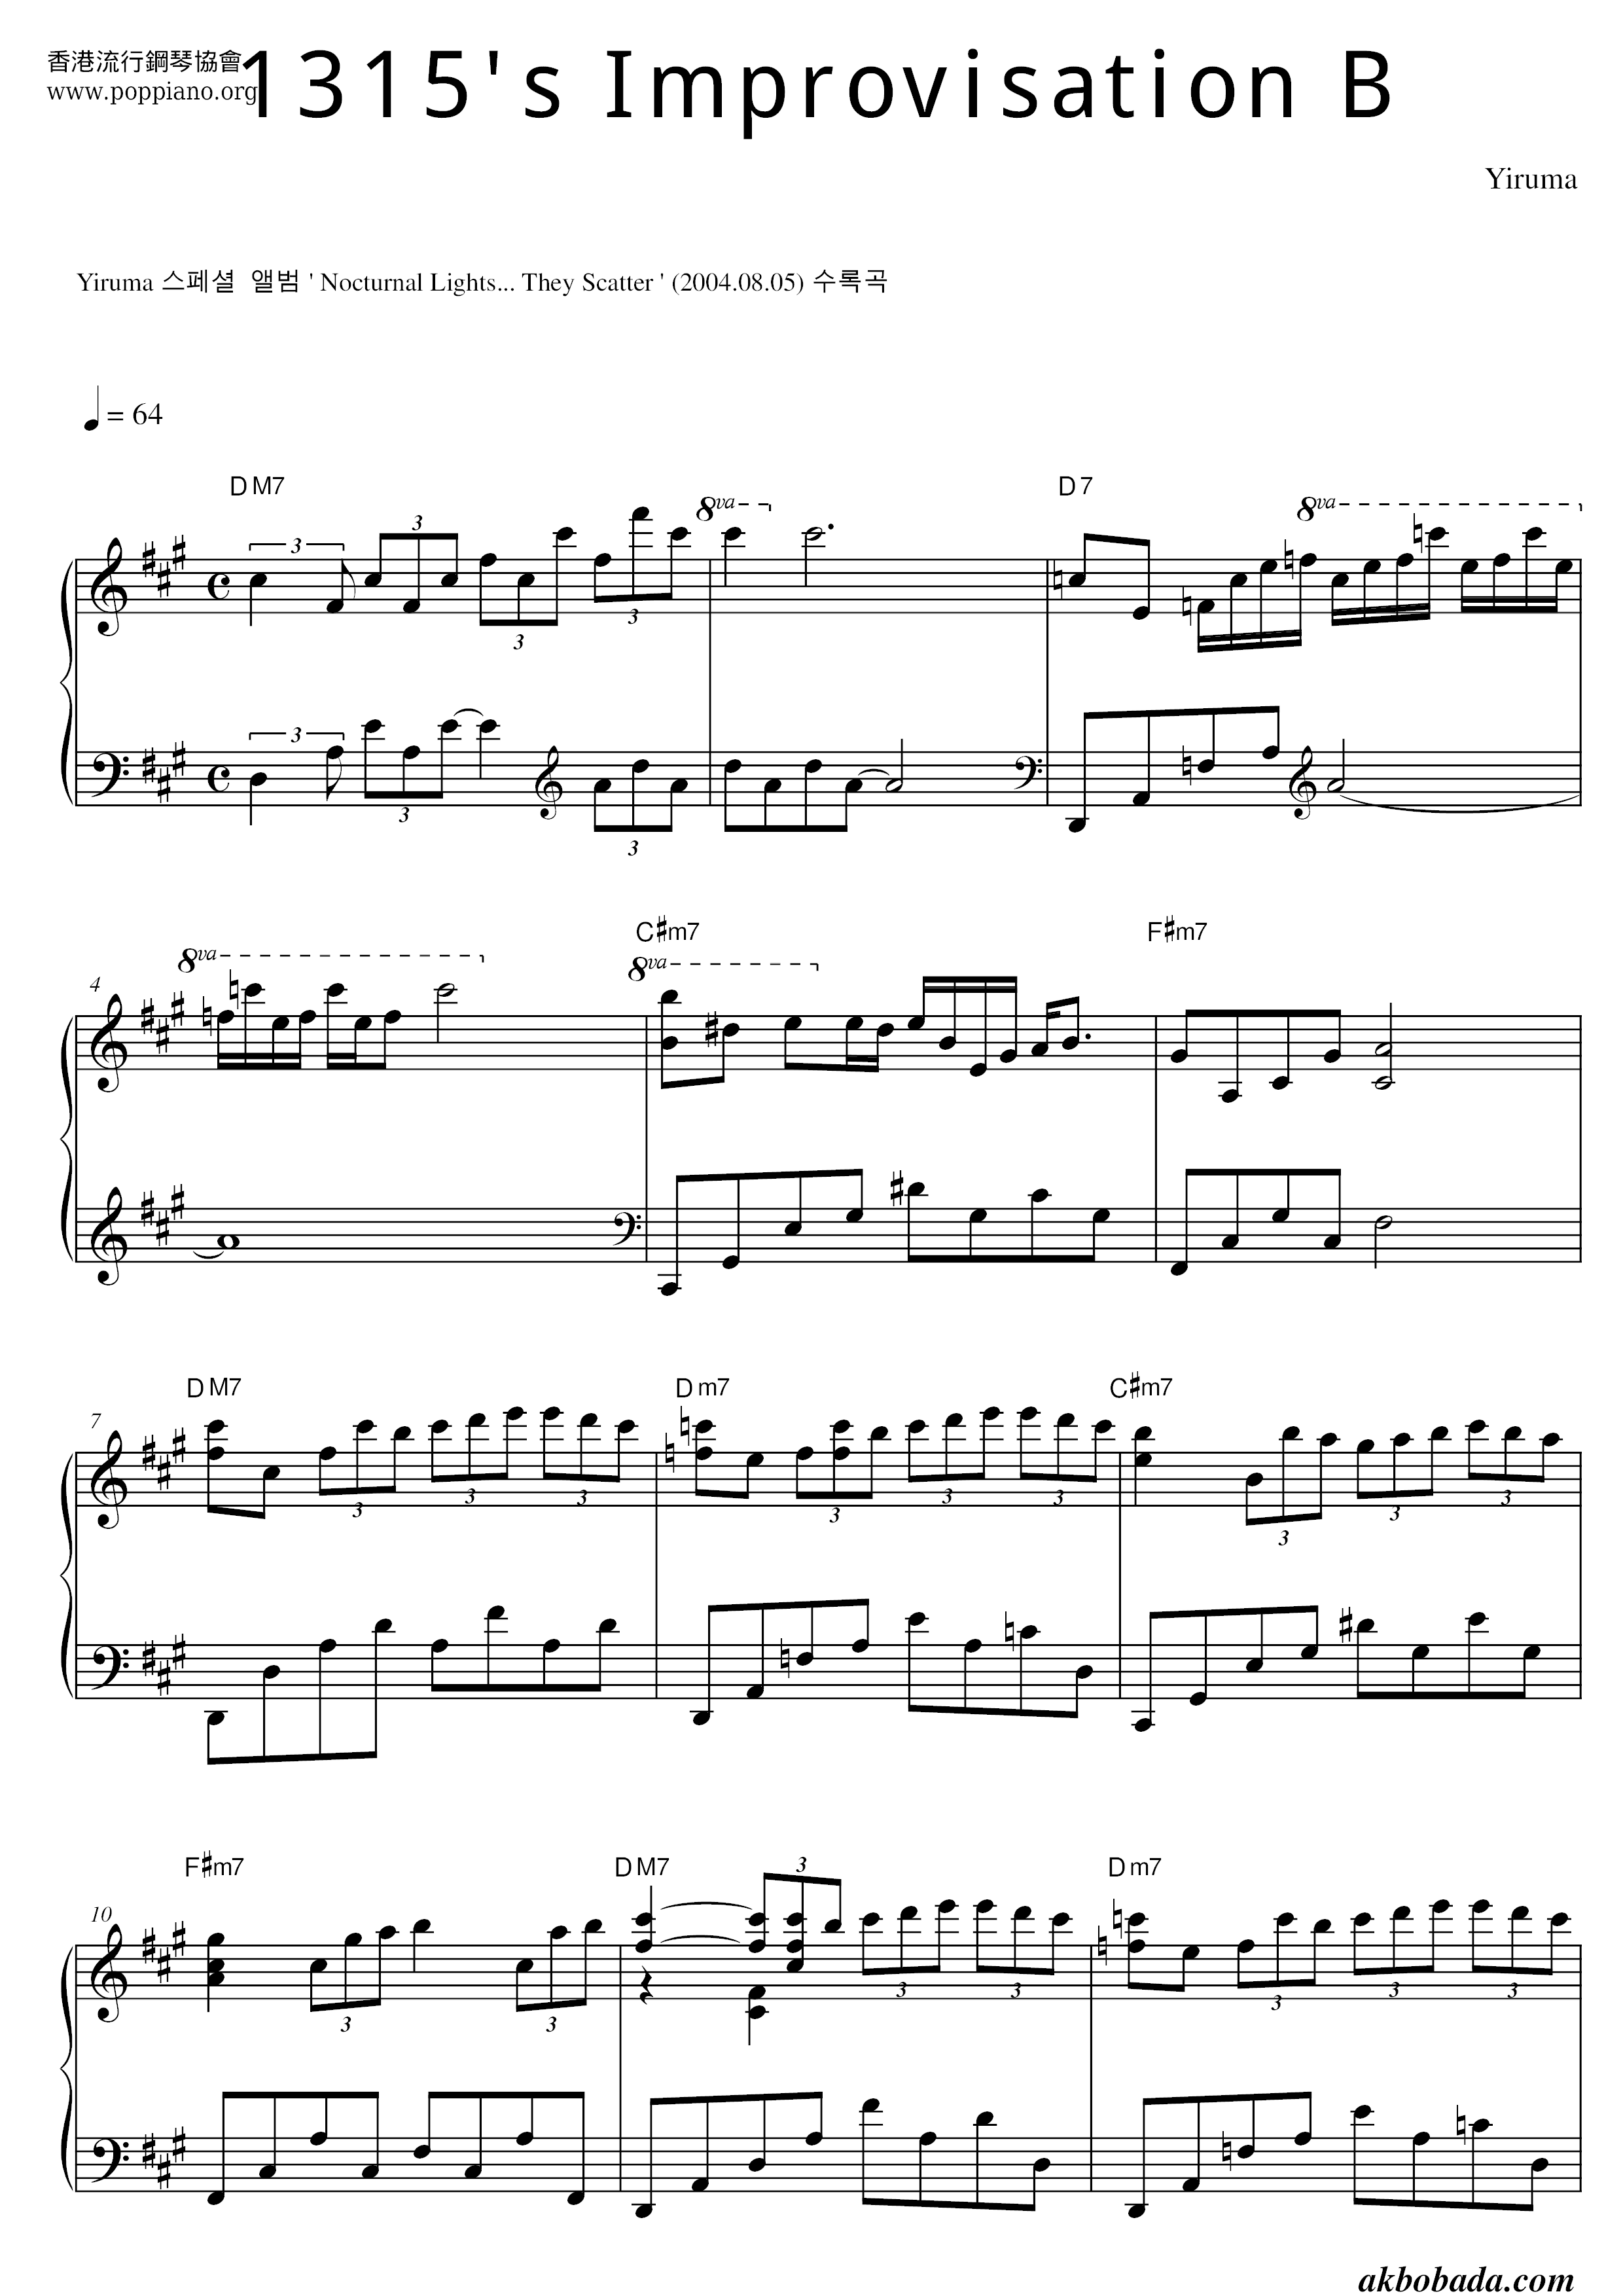 1315's Improvisation B琴谱